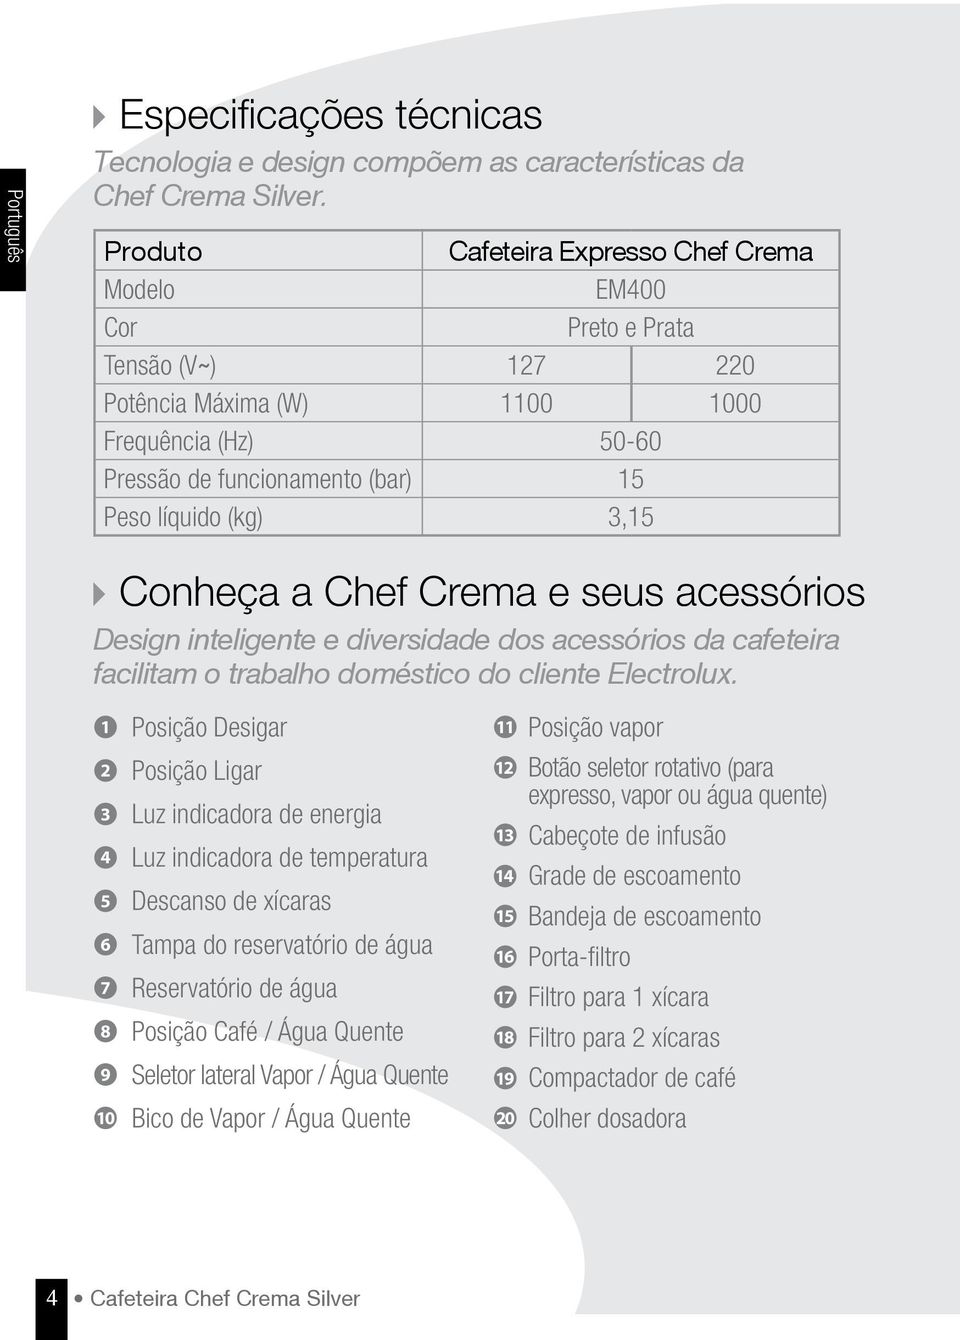 Conheça a Chef Crema e seus acessórios Design inteligente e diversidade dos acessórios da cafeteira facilitam o trabalho doméstico do cliente Electrolux.